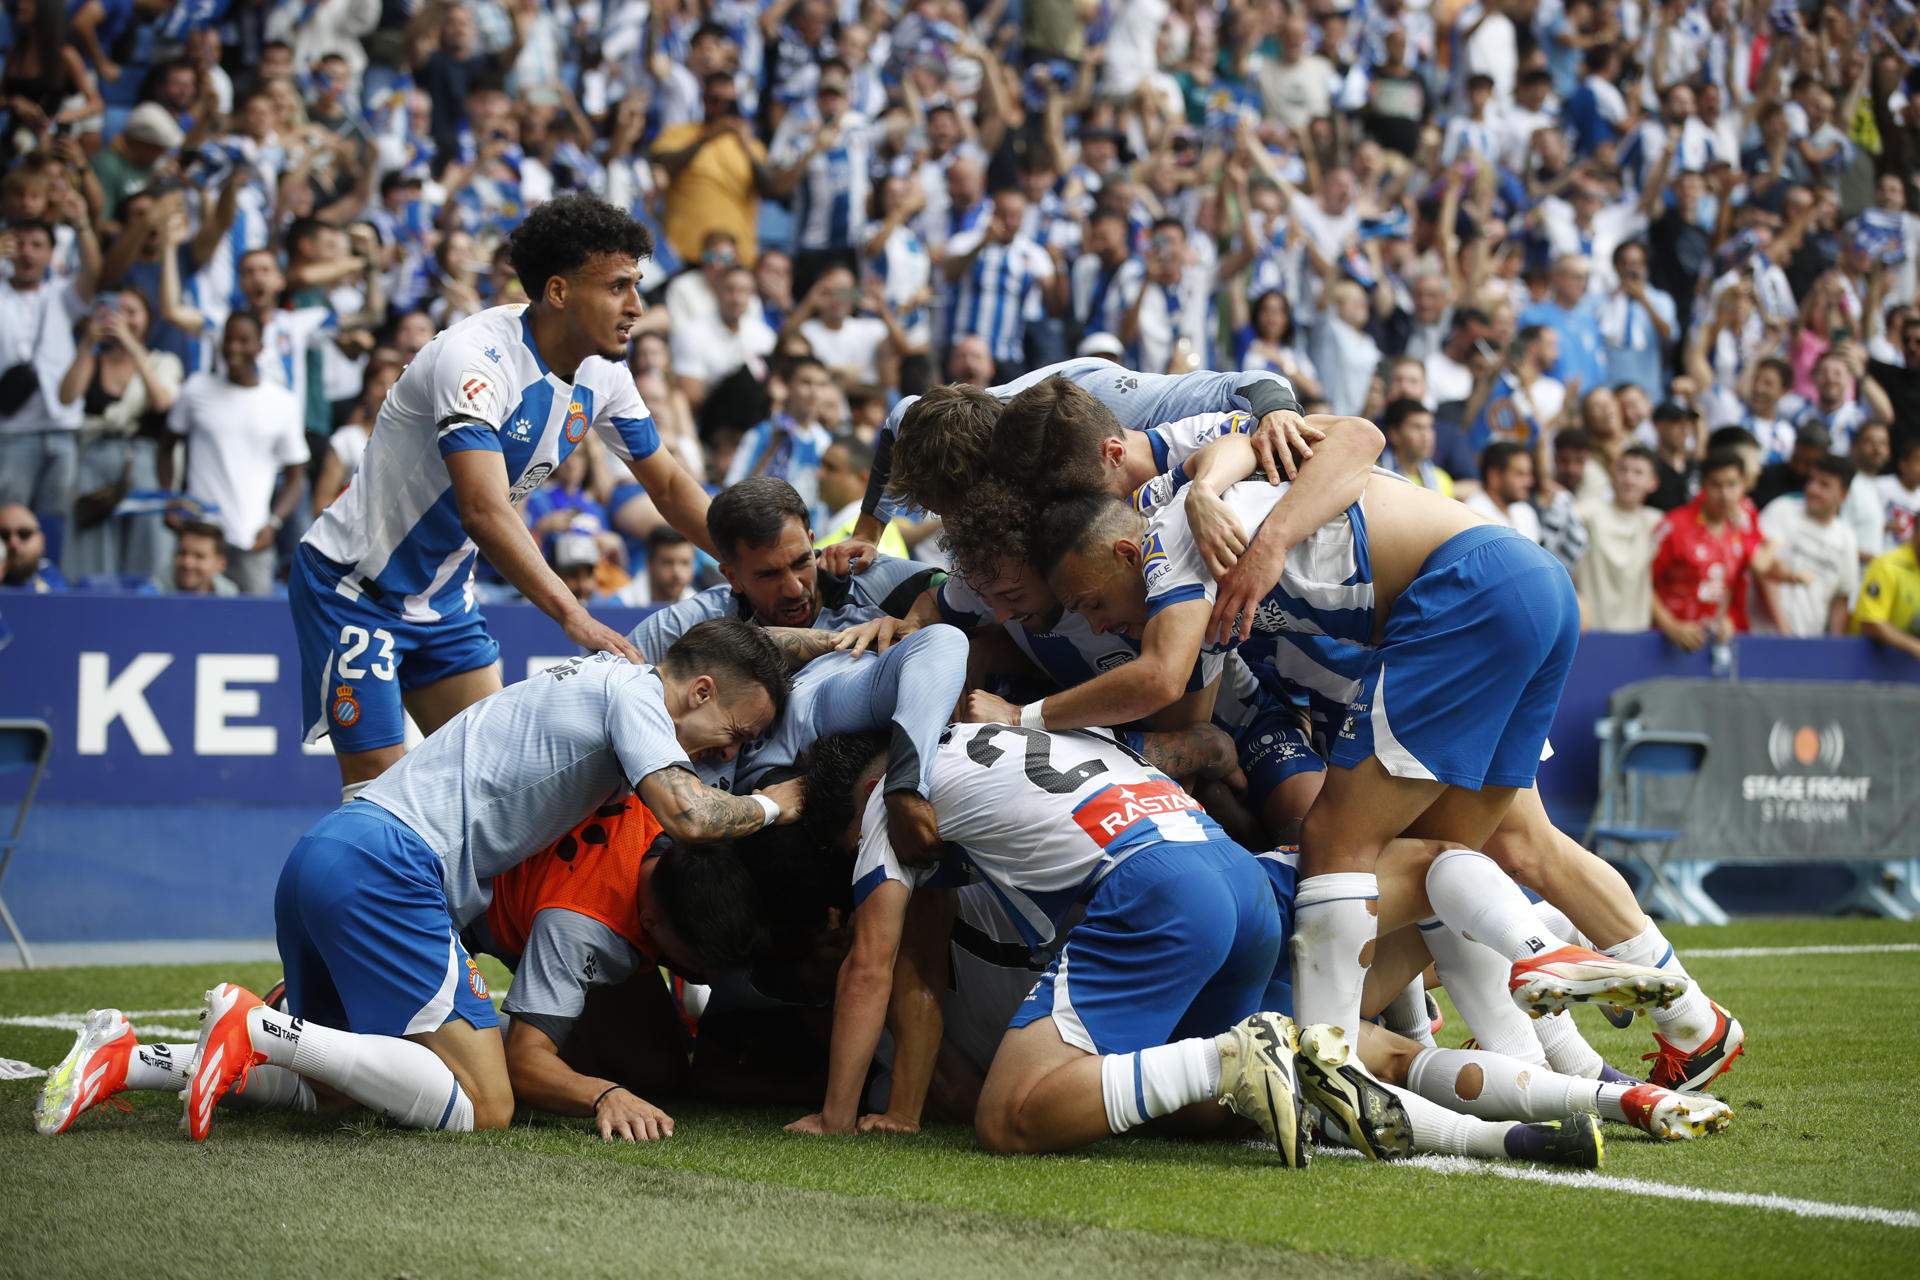 El Espanyol completa la gesta ante el Oviedo (2-0) y vuelve a Primera División